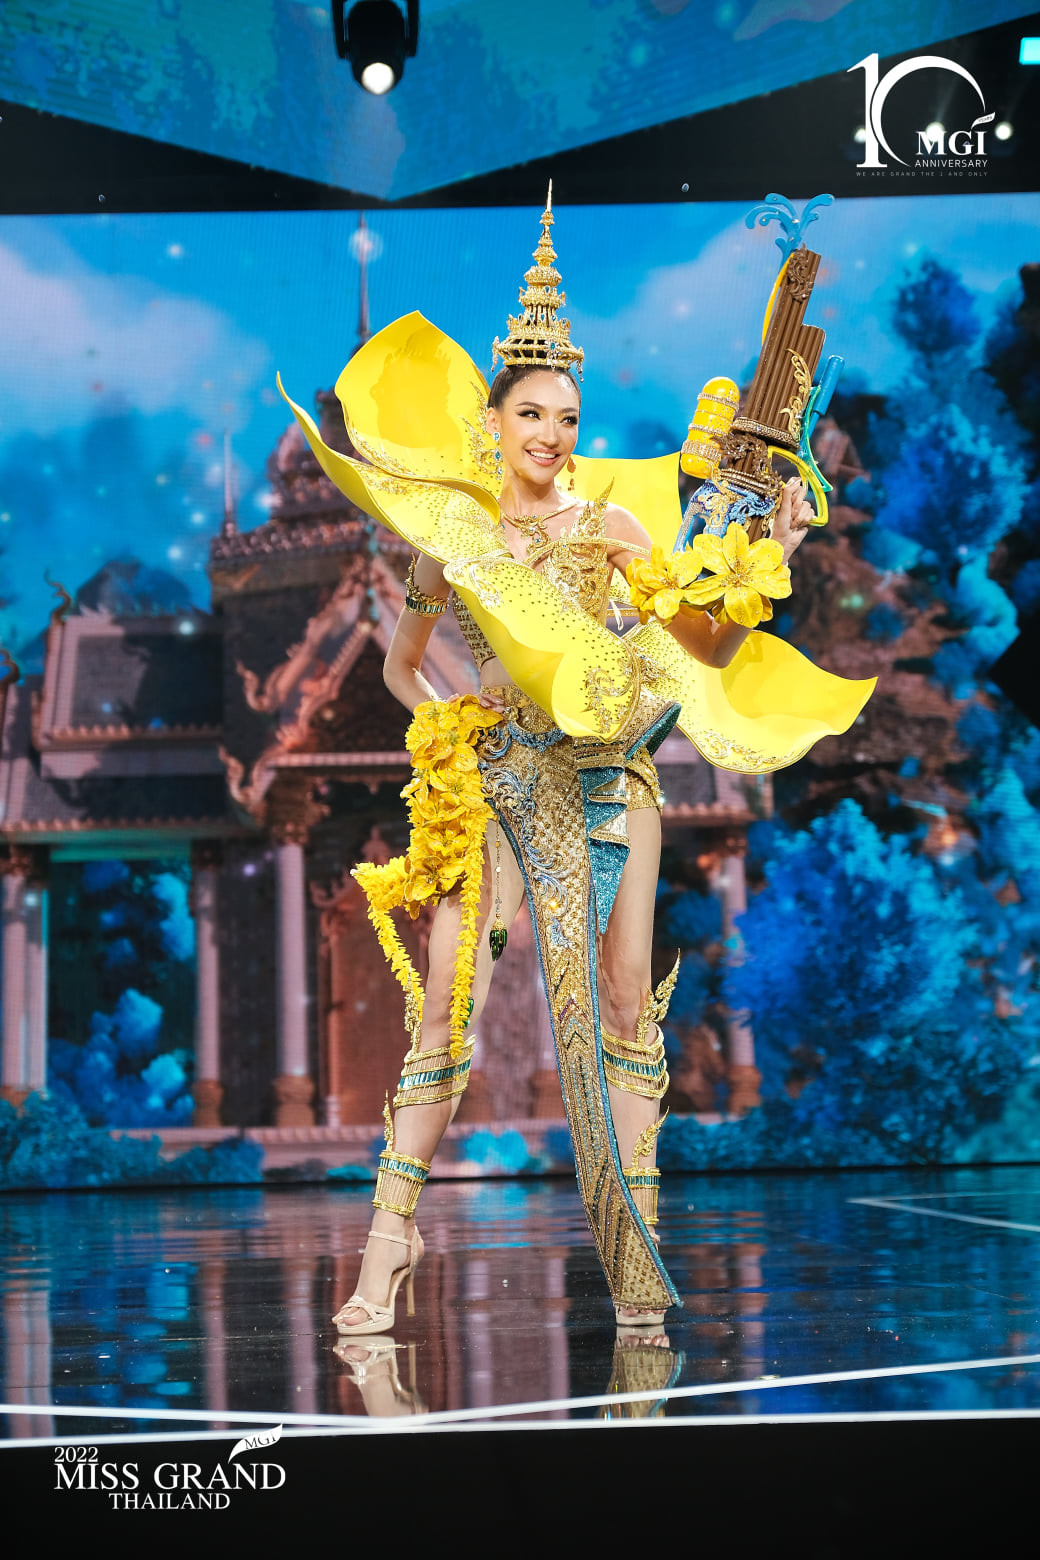 trajes tipicos de candidatas a miss grand thailand 2022. VZWhaS